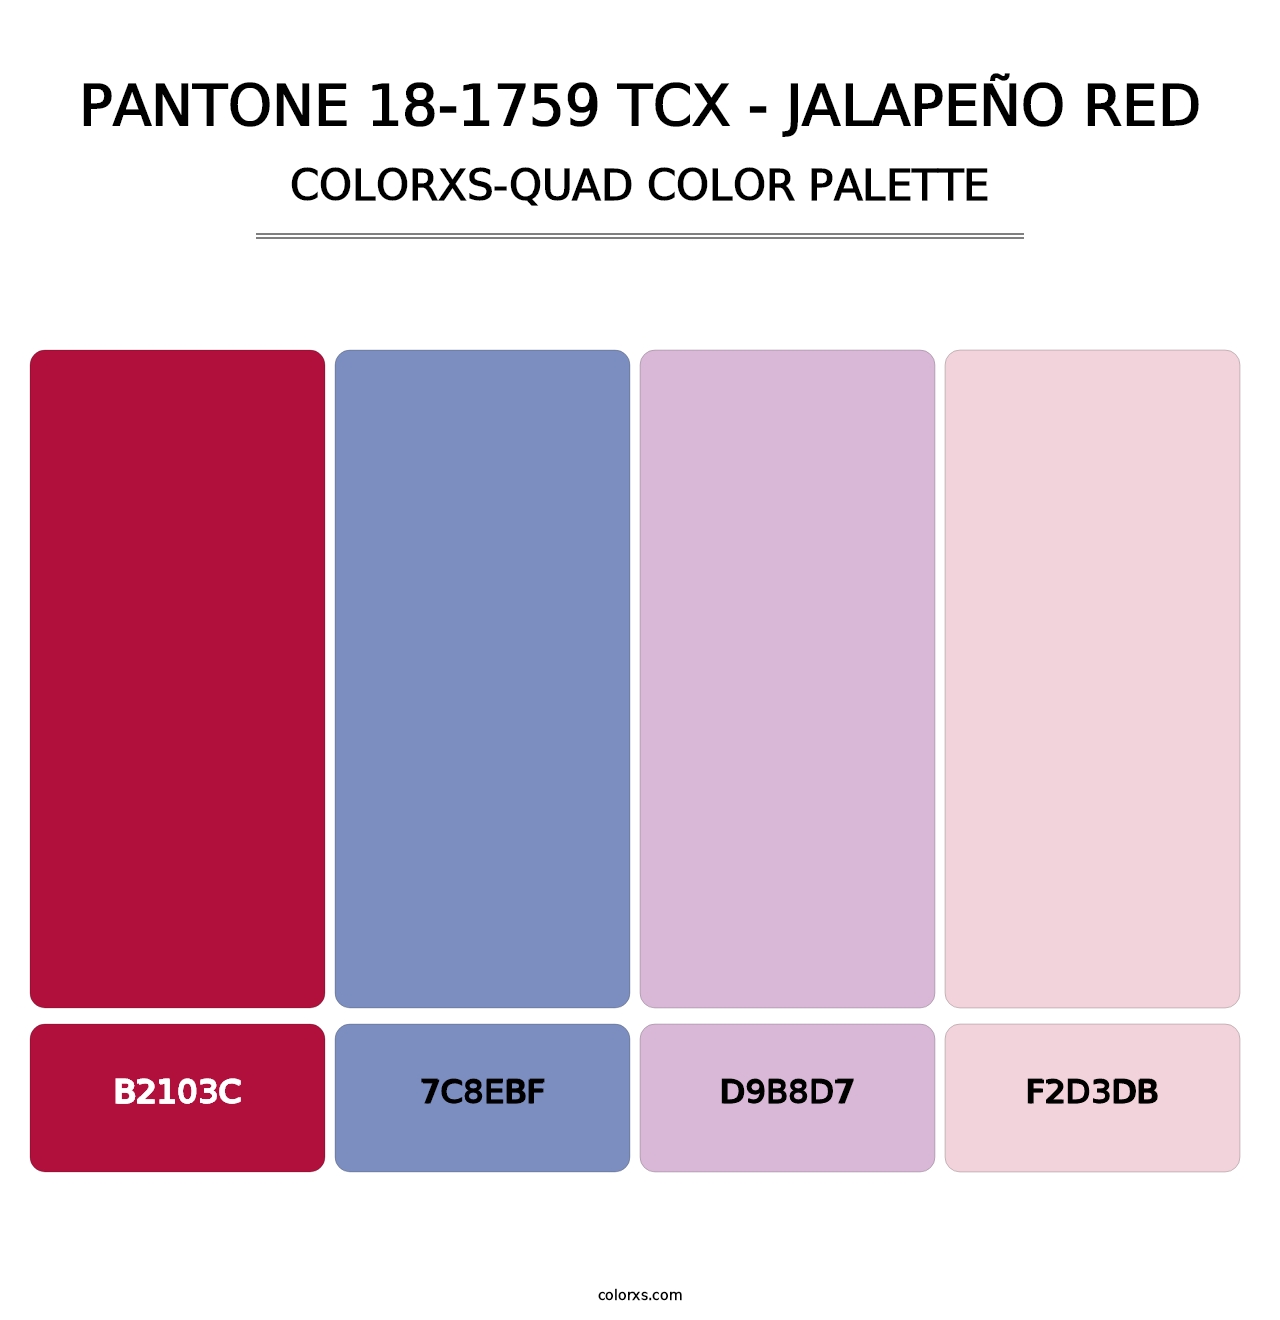 PANTONE 18-1759 TCX - Jalapeño Red - Colorxs Quad Palette